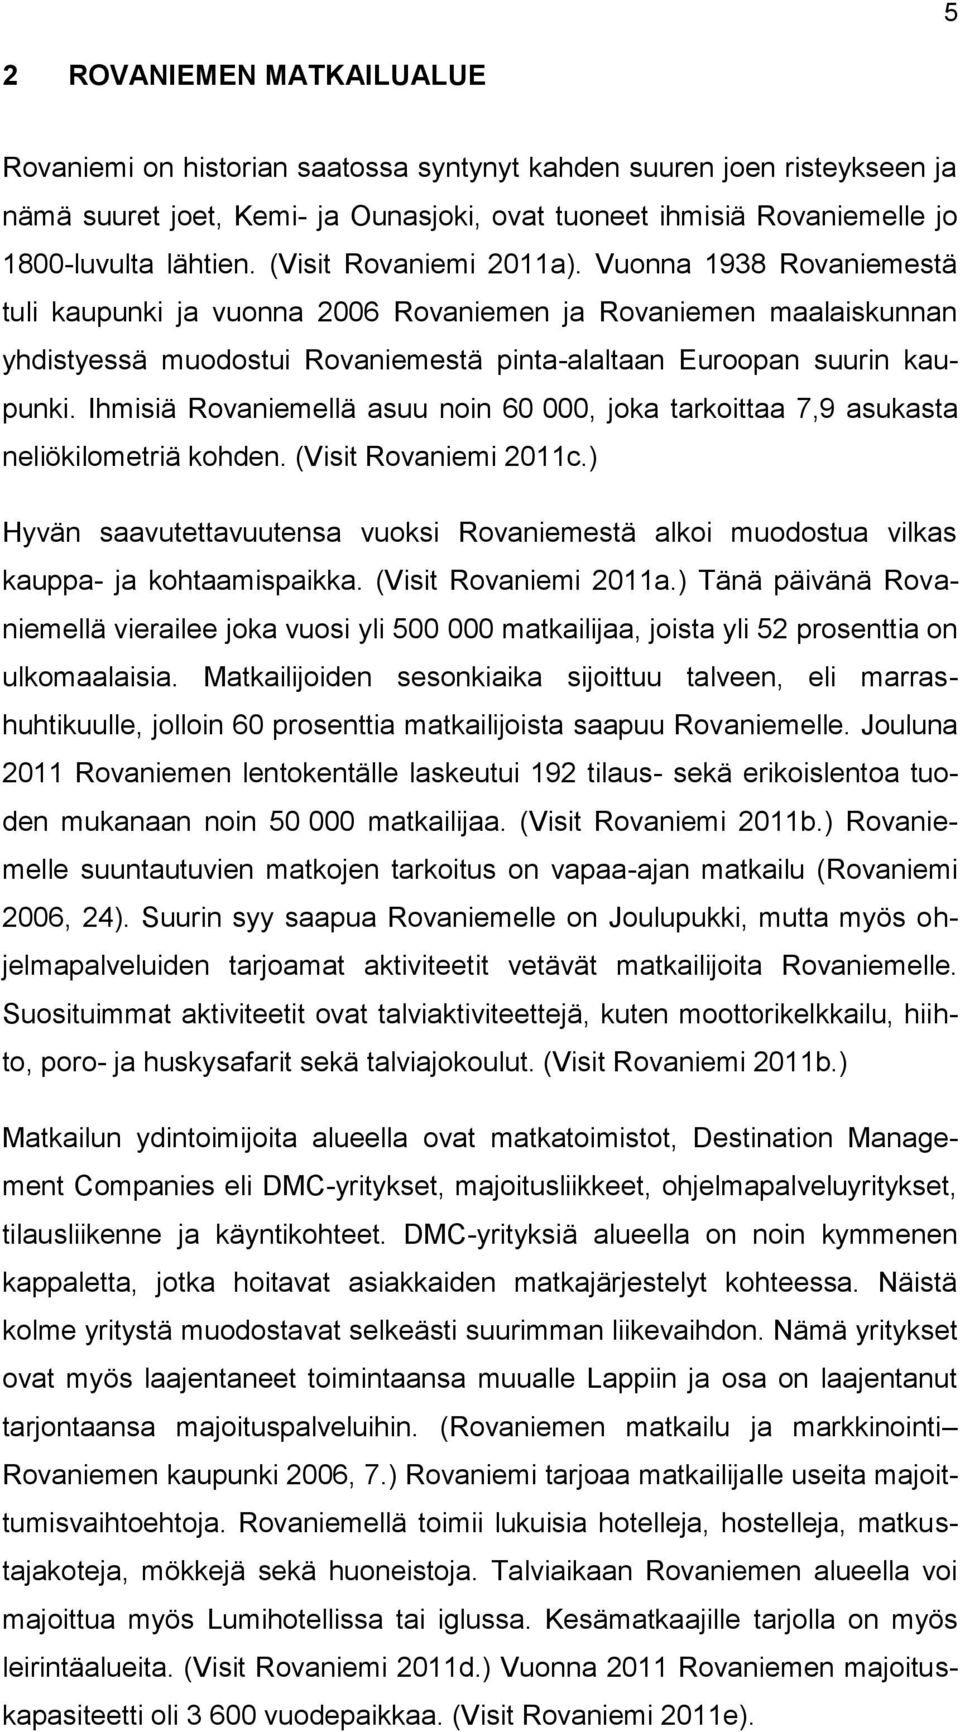 Ihmisiä Rovaniemellä asuu noin 60 000, joka tarkoittaa 7,9 asukasta neliökilometriä kohden. (Visit Rovaniemi 2011c.